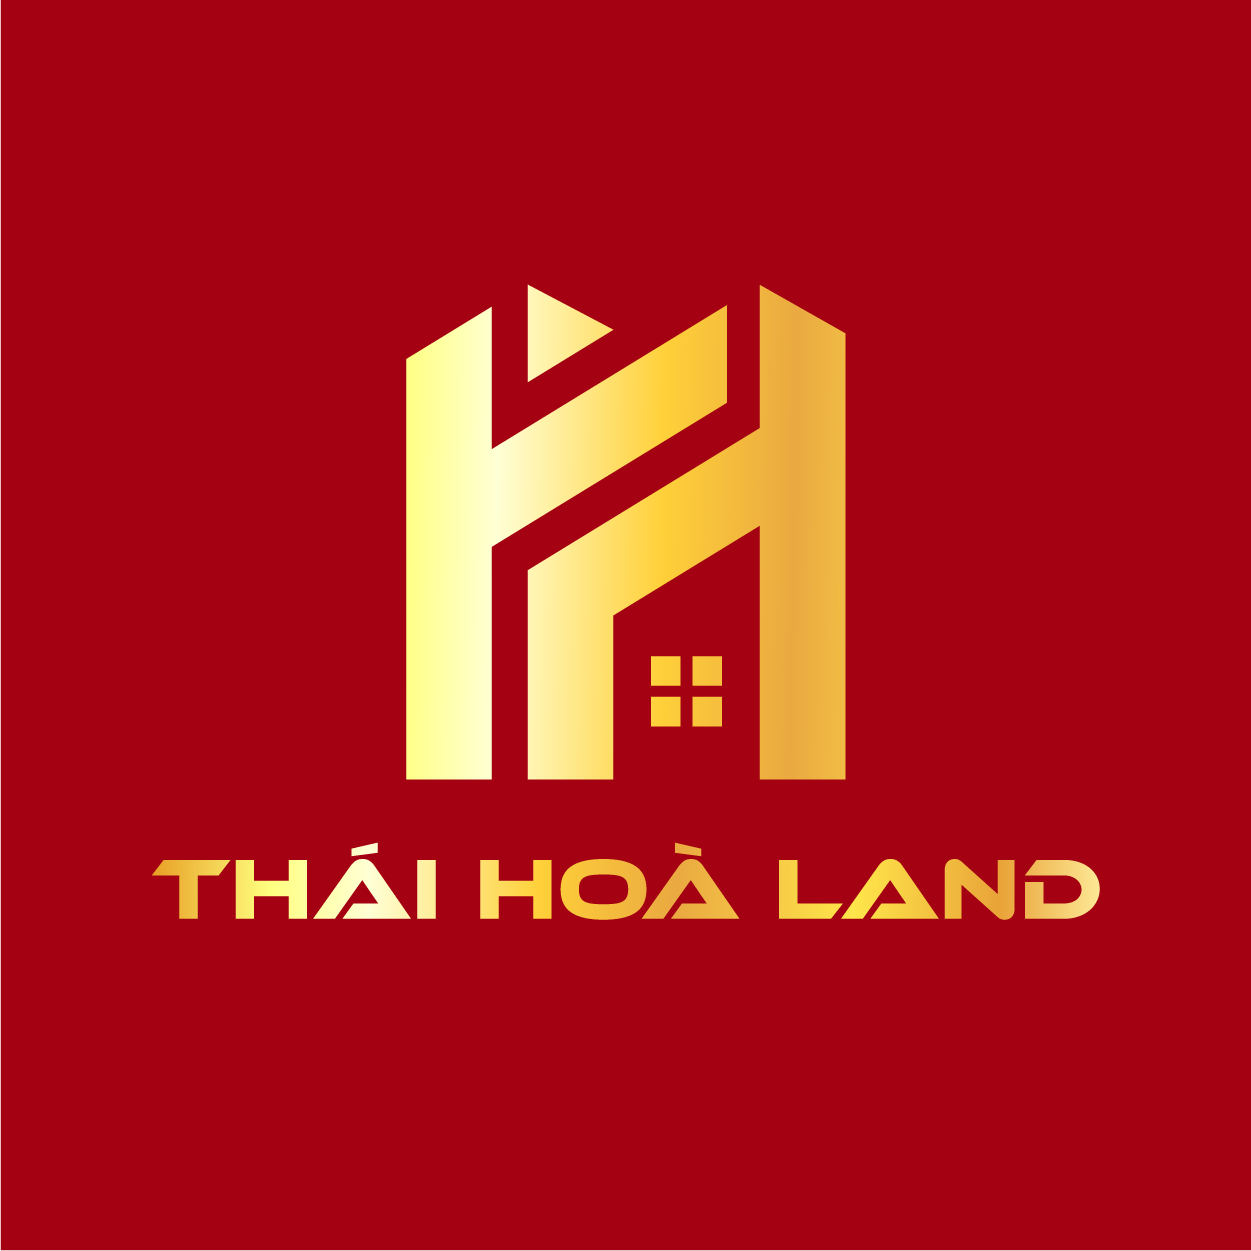 Thai Hoa Land